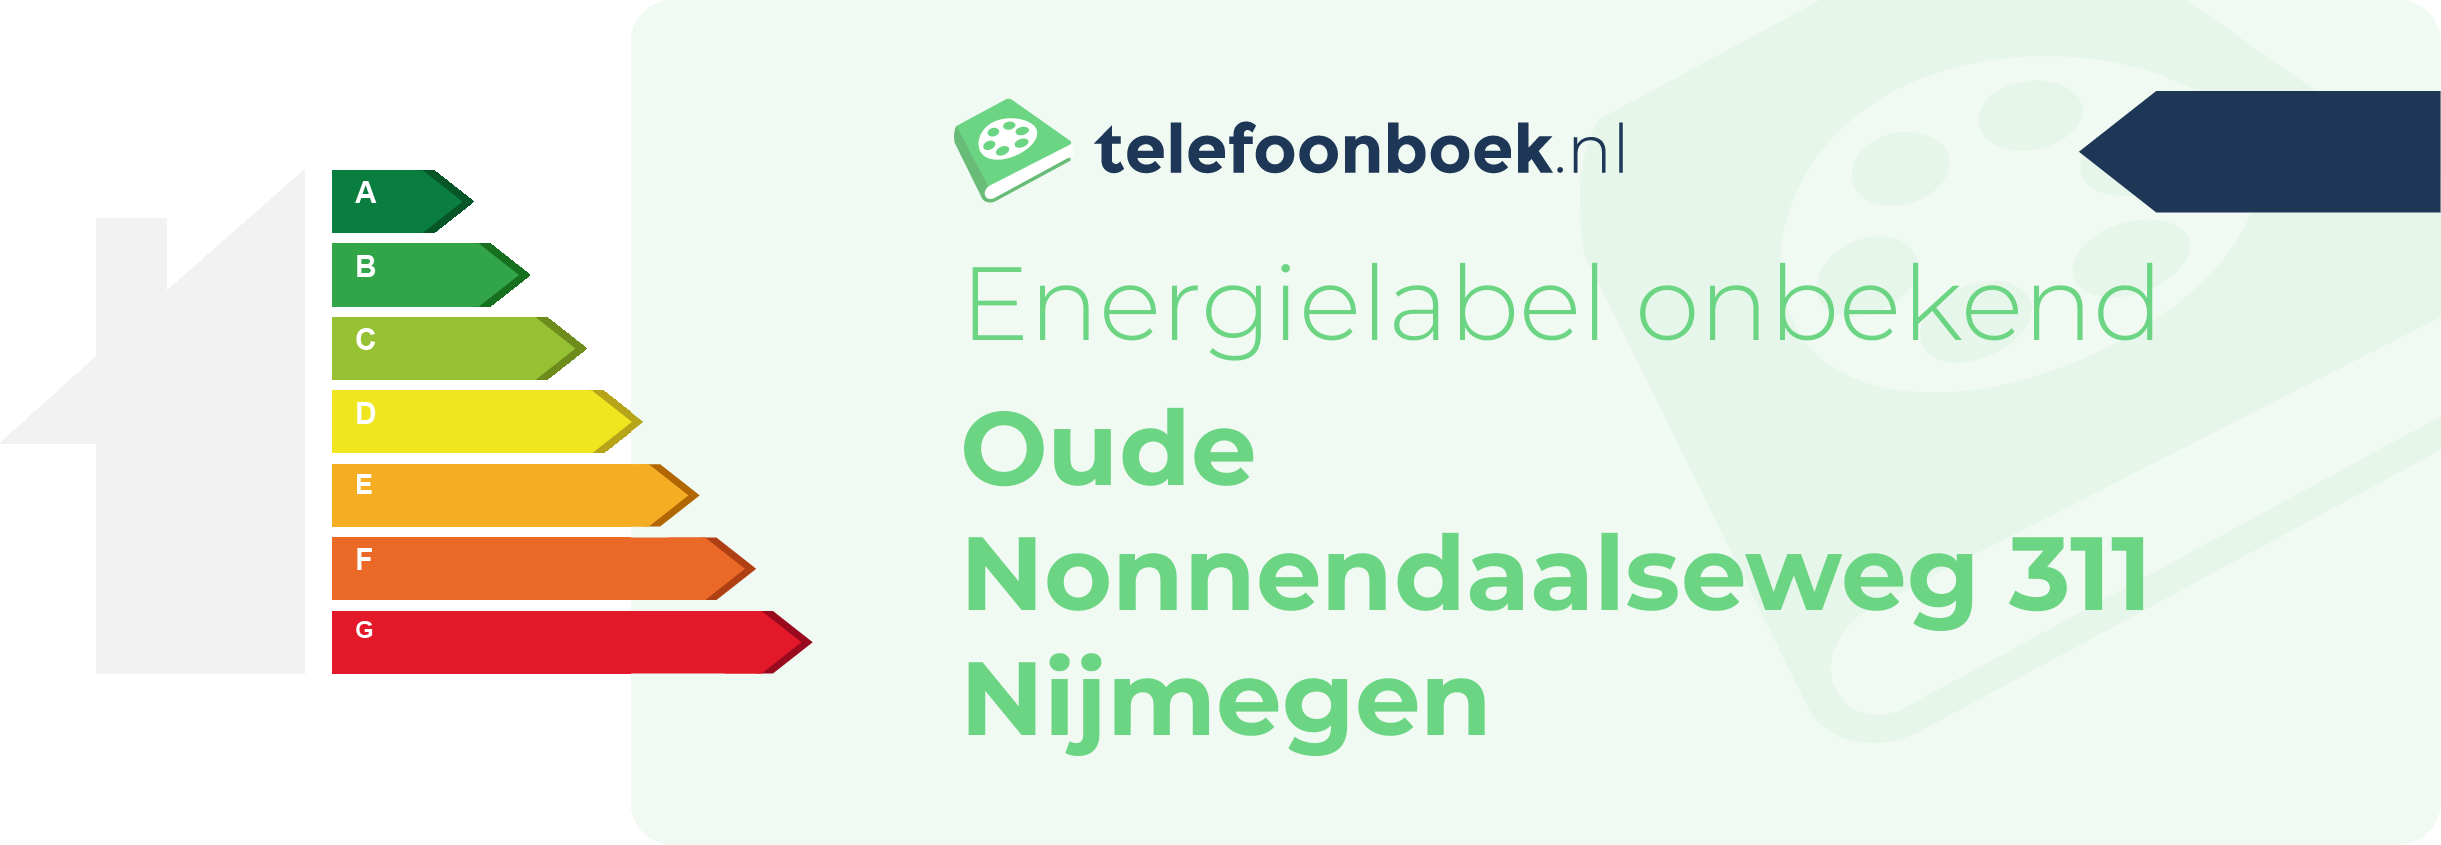 Energielabel Oude Nonnendaalseweg 311 Nijmegen